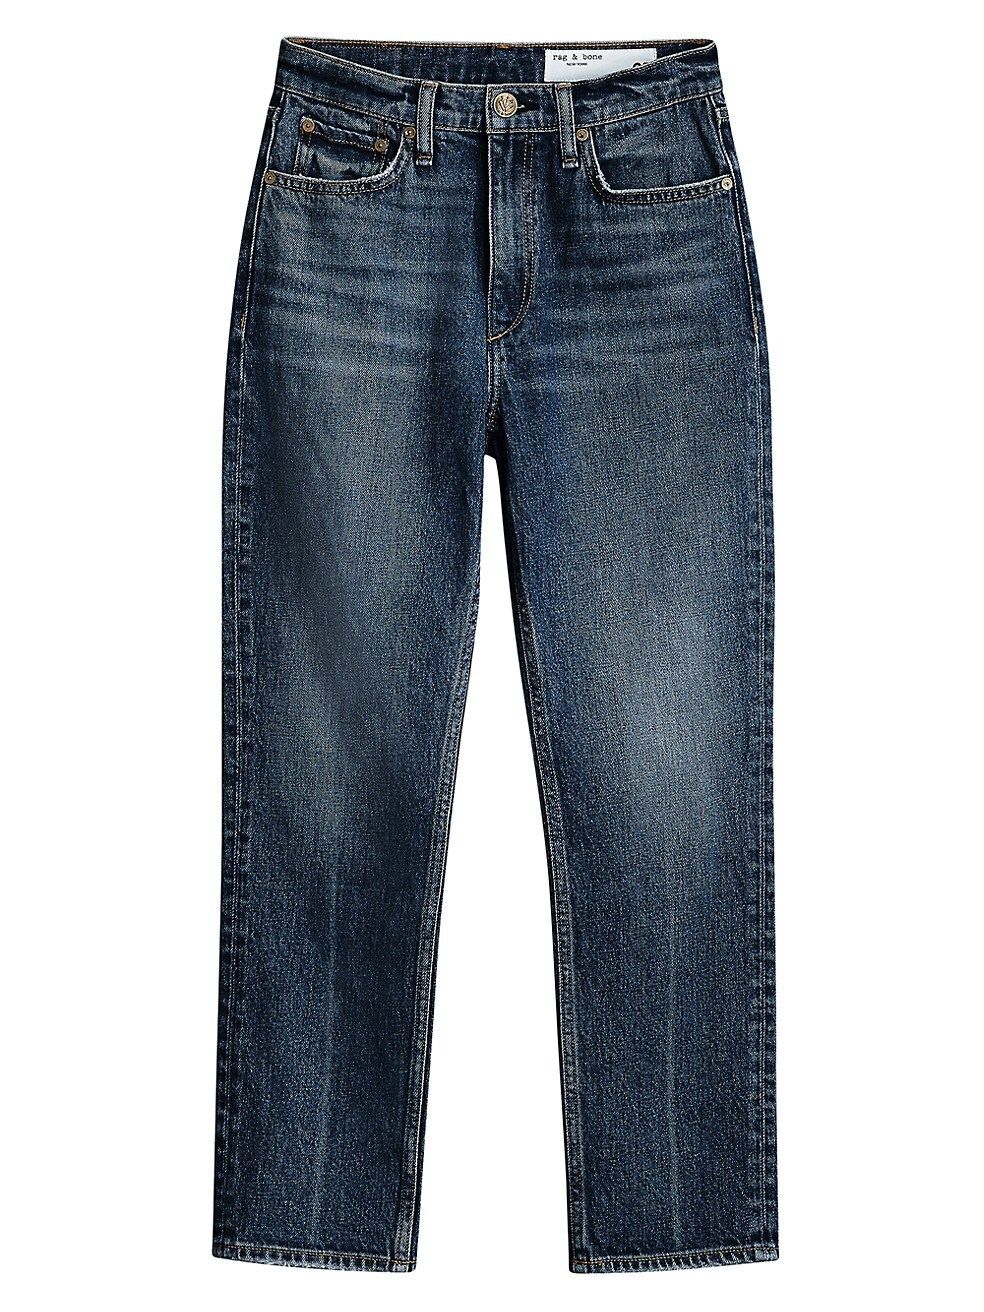 rag & bone Wren Ankle-Crop Jeans | Saks Fifth Avenue